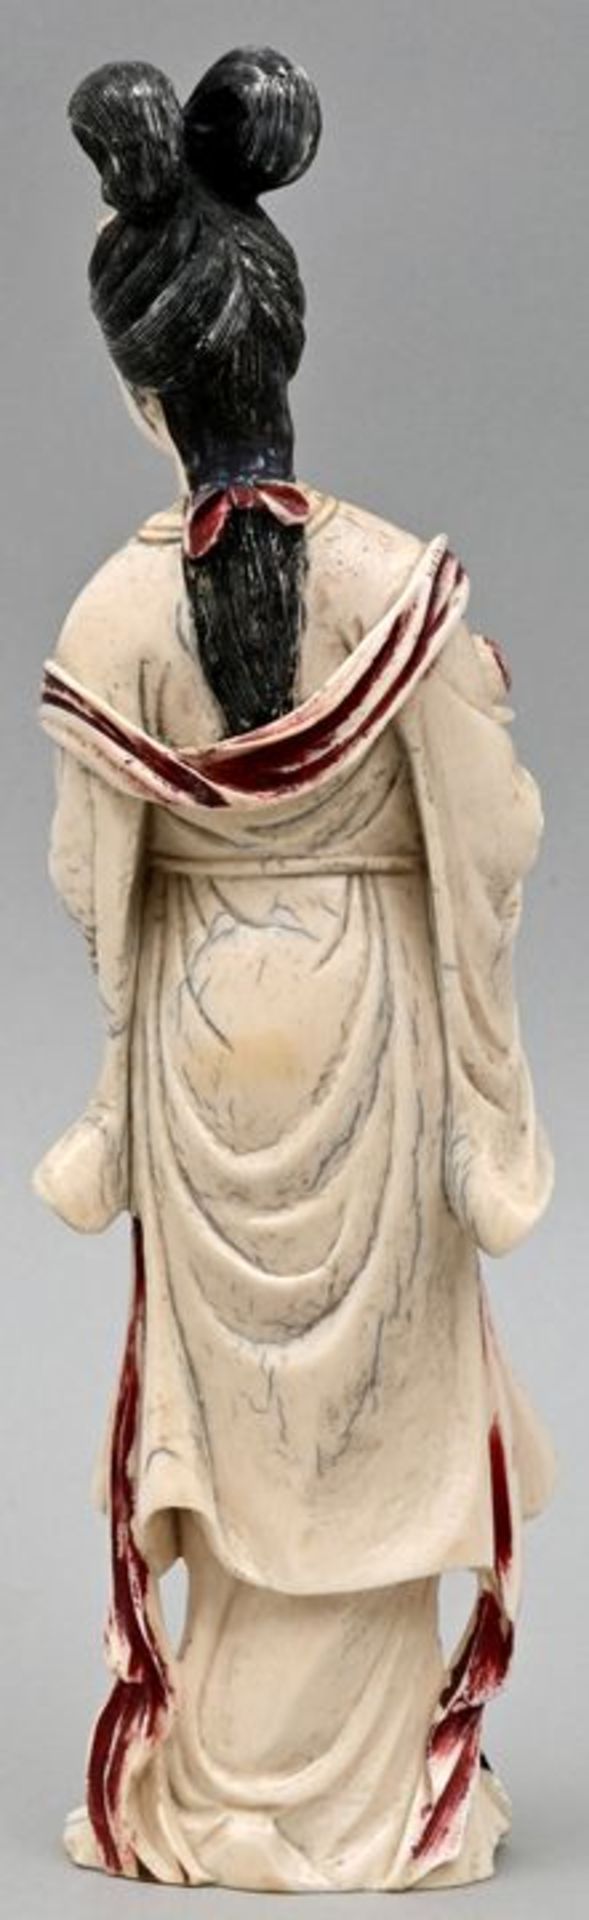 Elfenbeinfigur / Ivory figure - Image 3 of 3